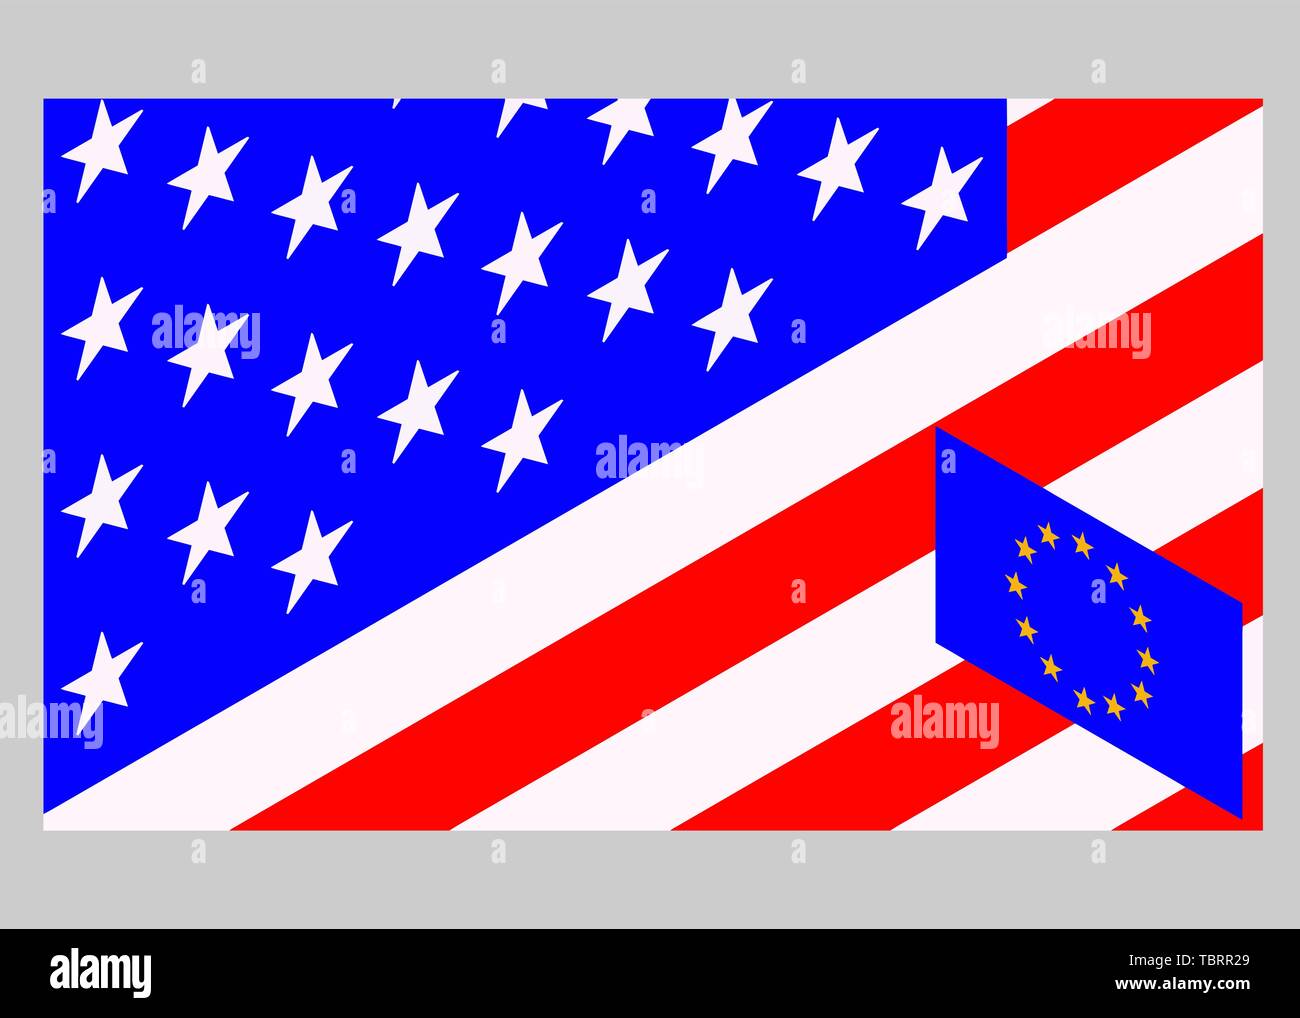 USA gegenüber der Europäischen Union. Amerikanische Flagge und Europa Fahne. Handelskrieg, wirtschaftlichen Krieg. Steuer Tarif, Preis Krieg. Stock Vektor